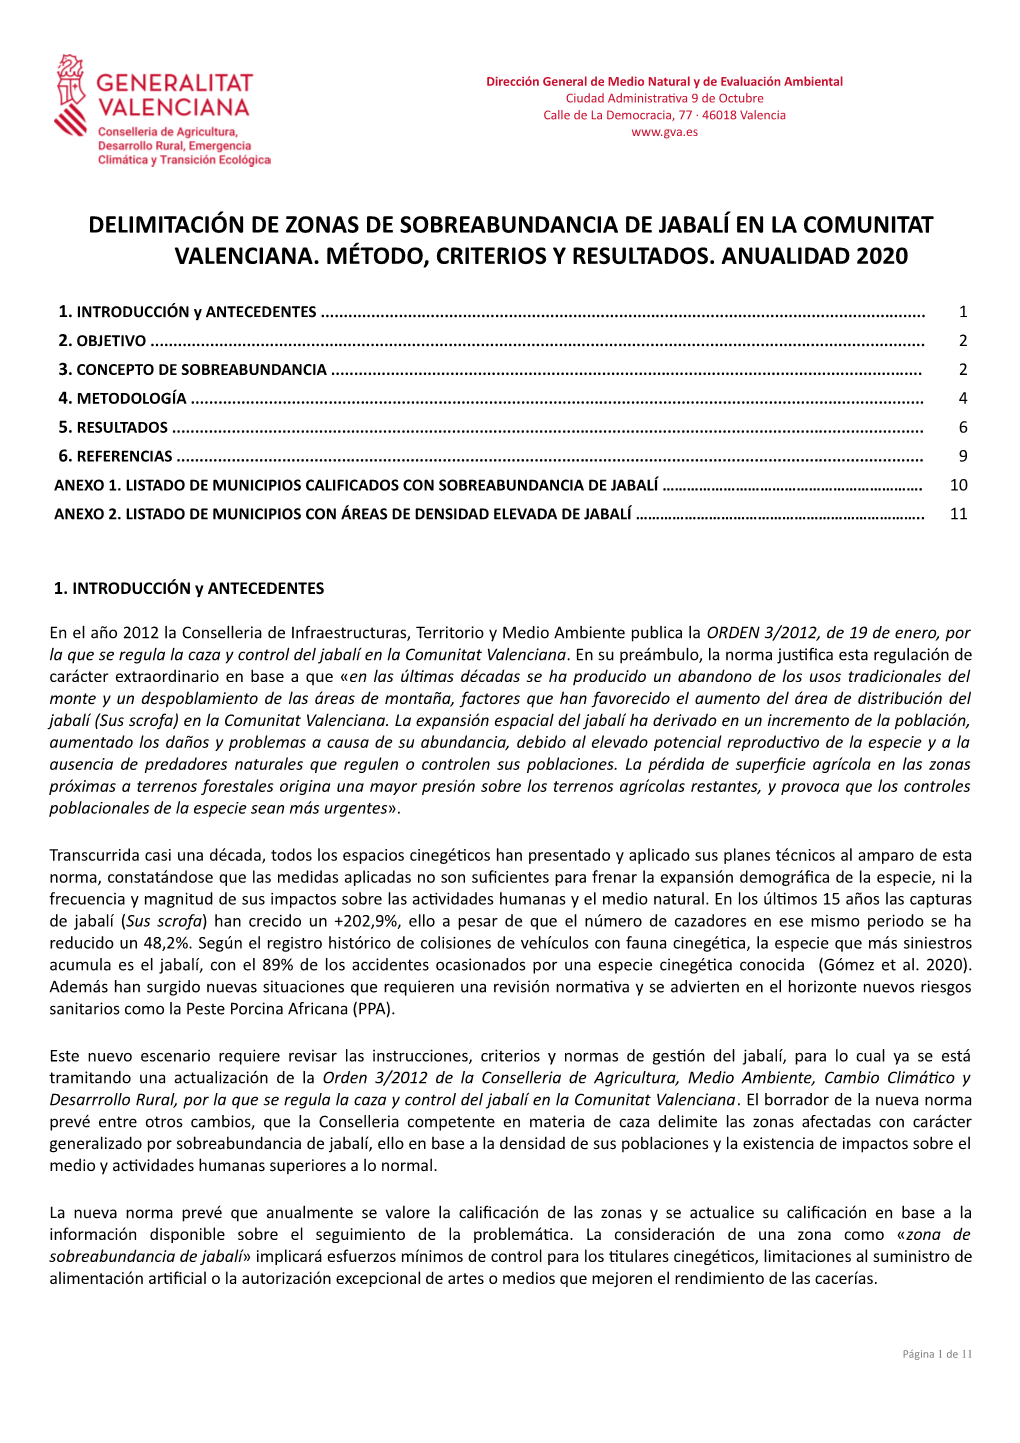 Delimitación De Zonas De Sobreabundancia De Jabalí En La Comunitat Valenciana. Método, Criterios Y Resultados. Anualidad 2020